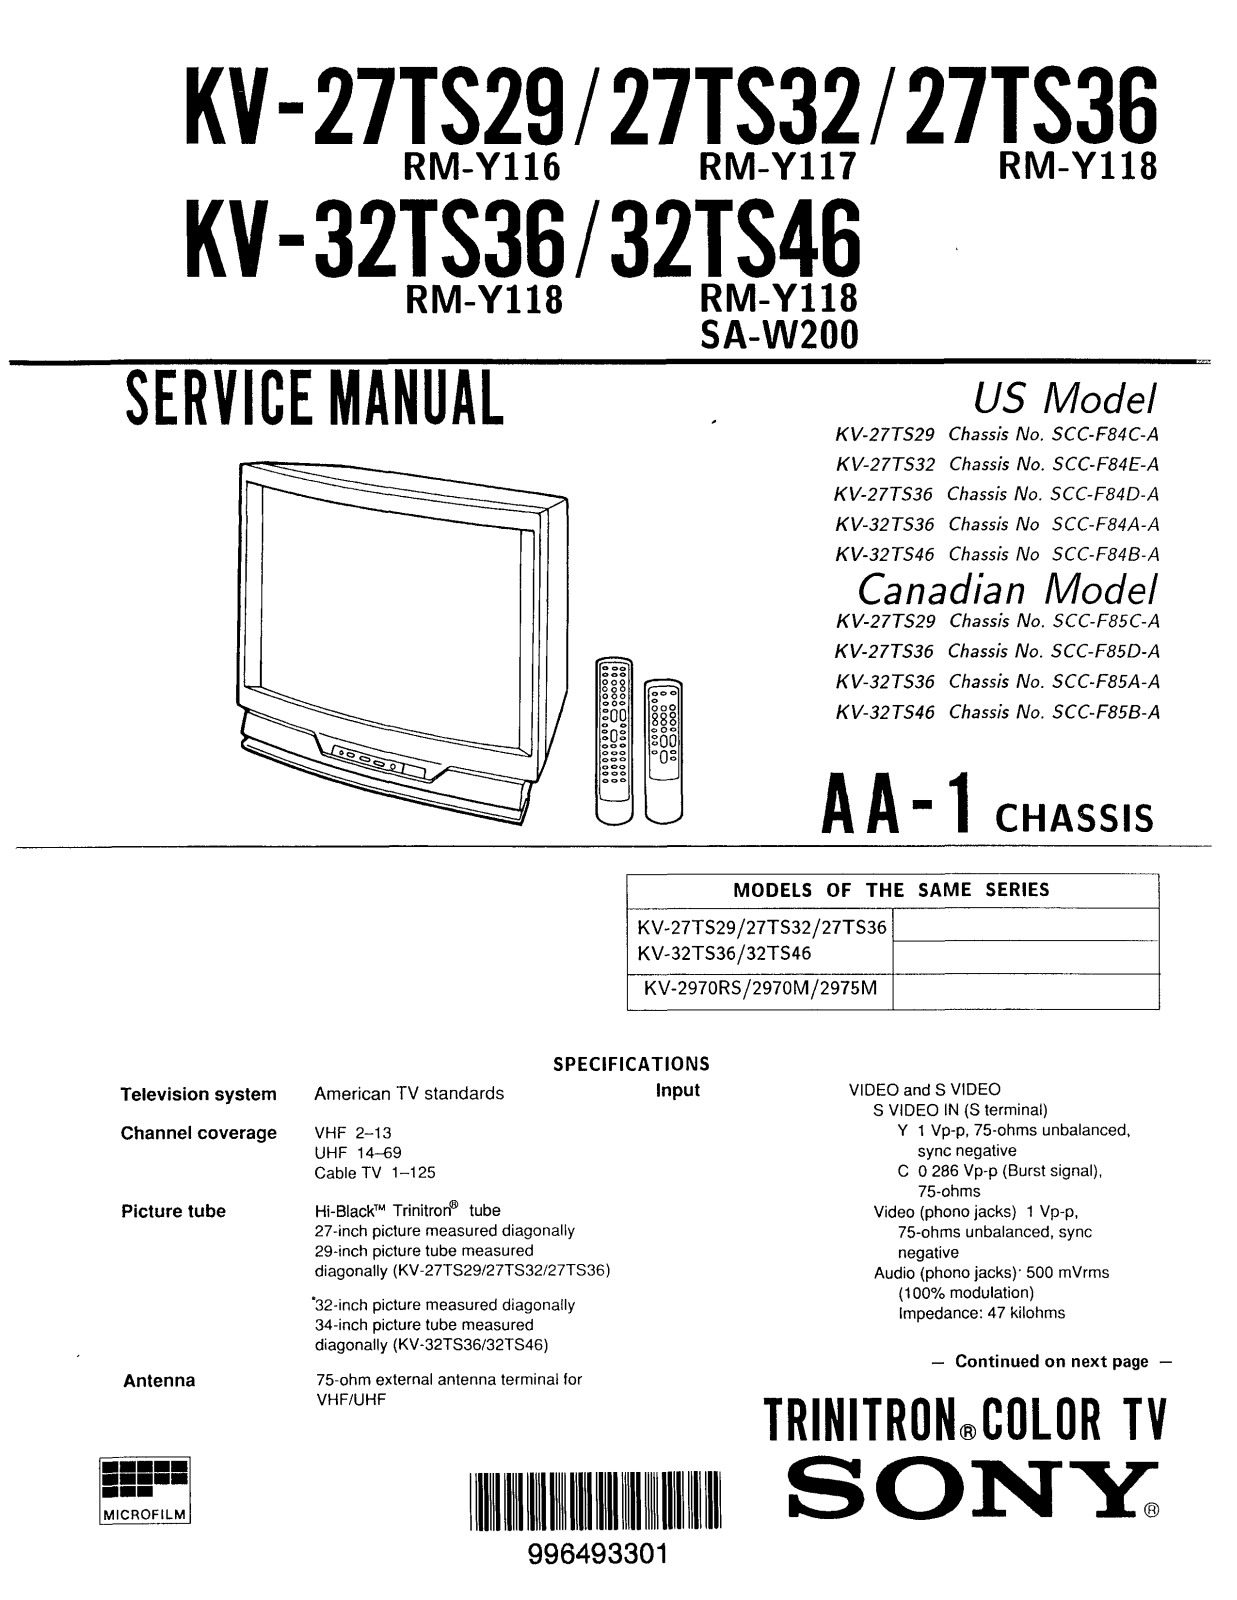 SONY kv 27ts29, kv 32ts46 Service Manual